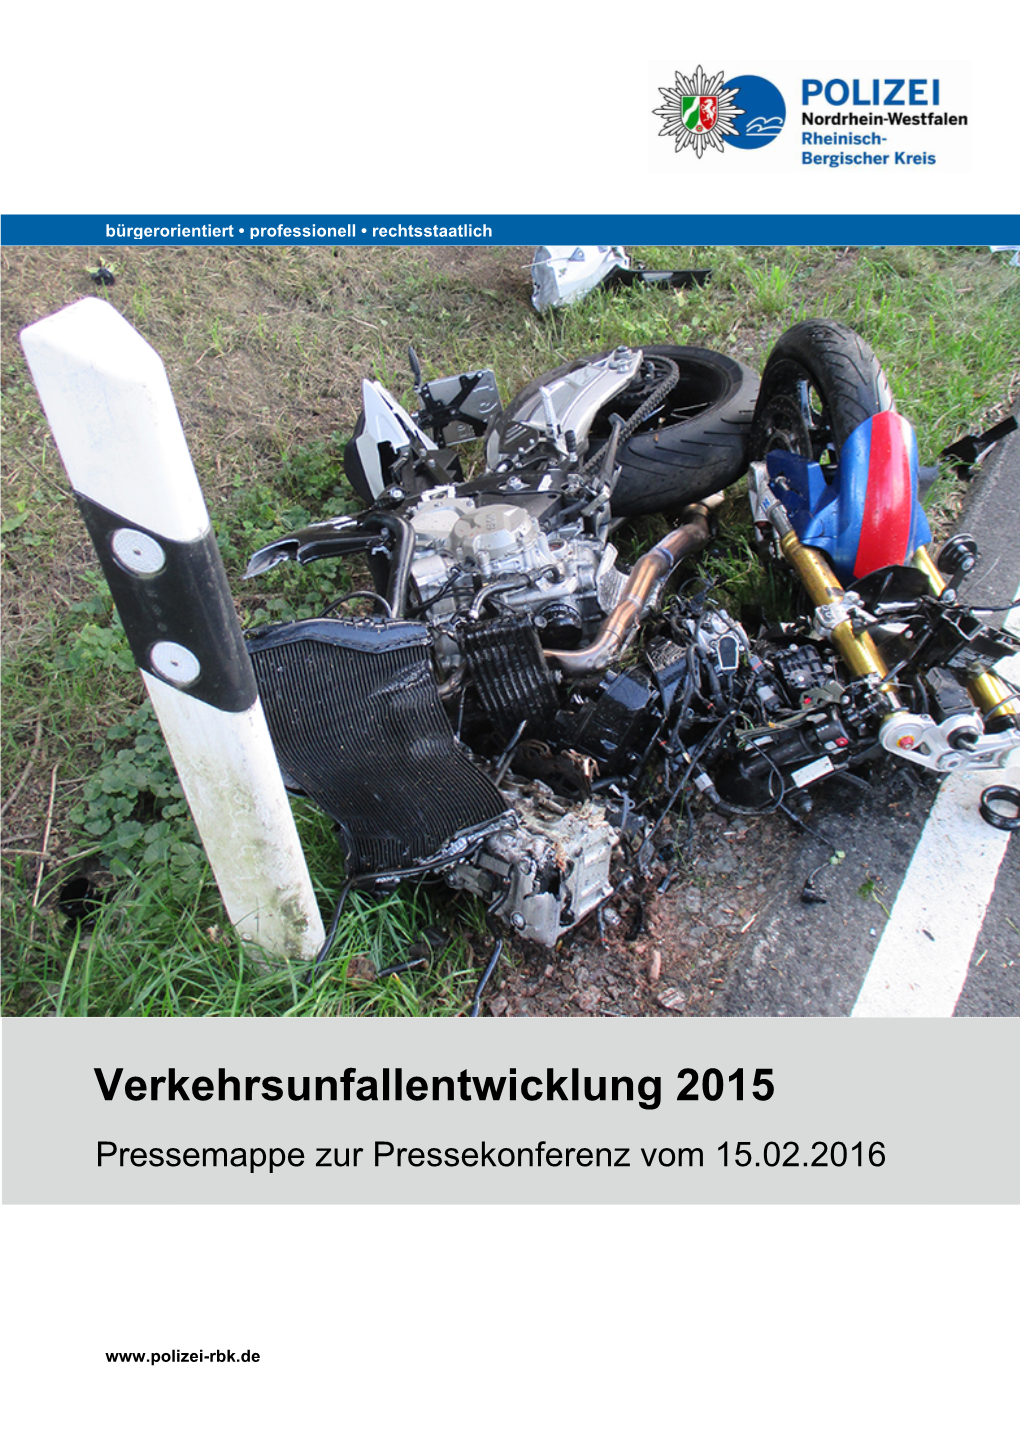 Verkehrsunfallentwicklung 2015 Pressemappe Zur Pressekonferenz Vom 15.02.2016